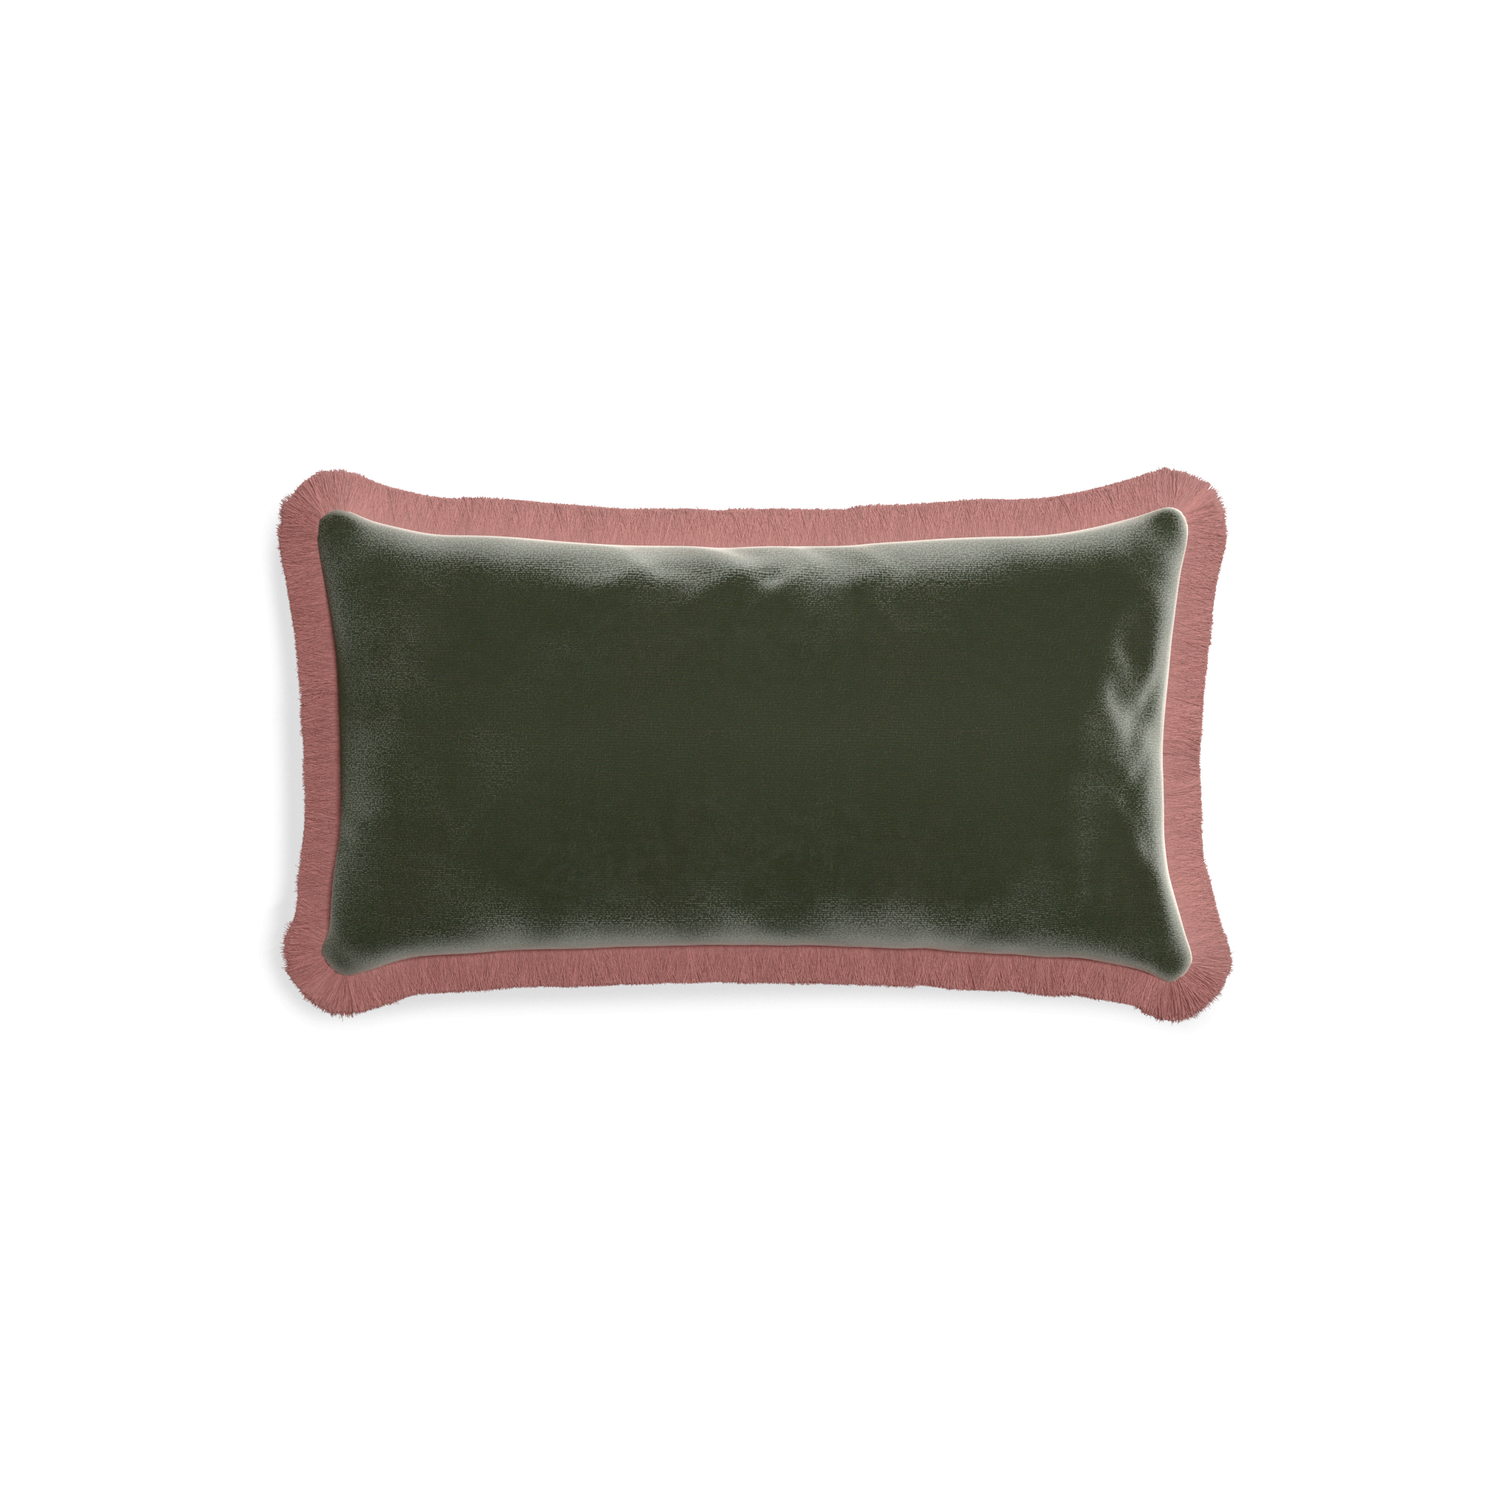 rectangle fern green velvet pillow with dusty rose fringe